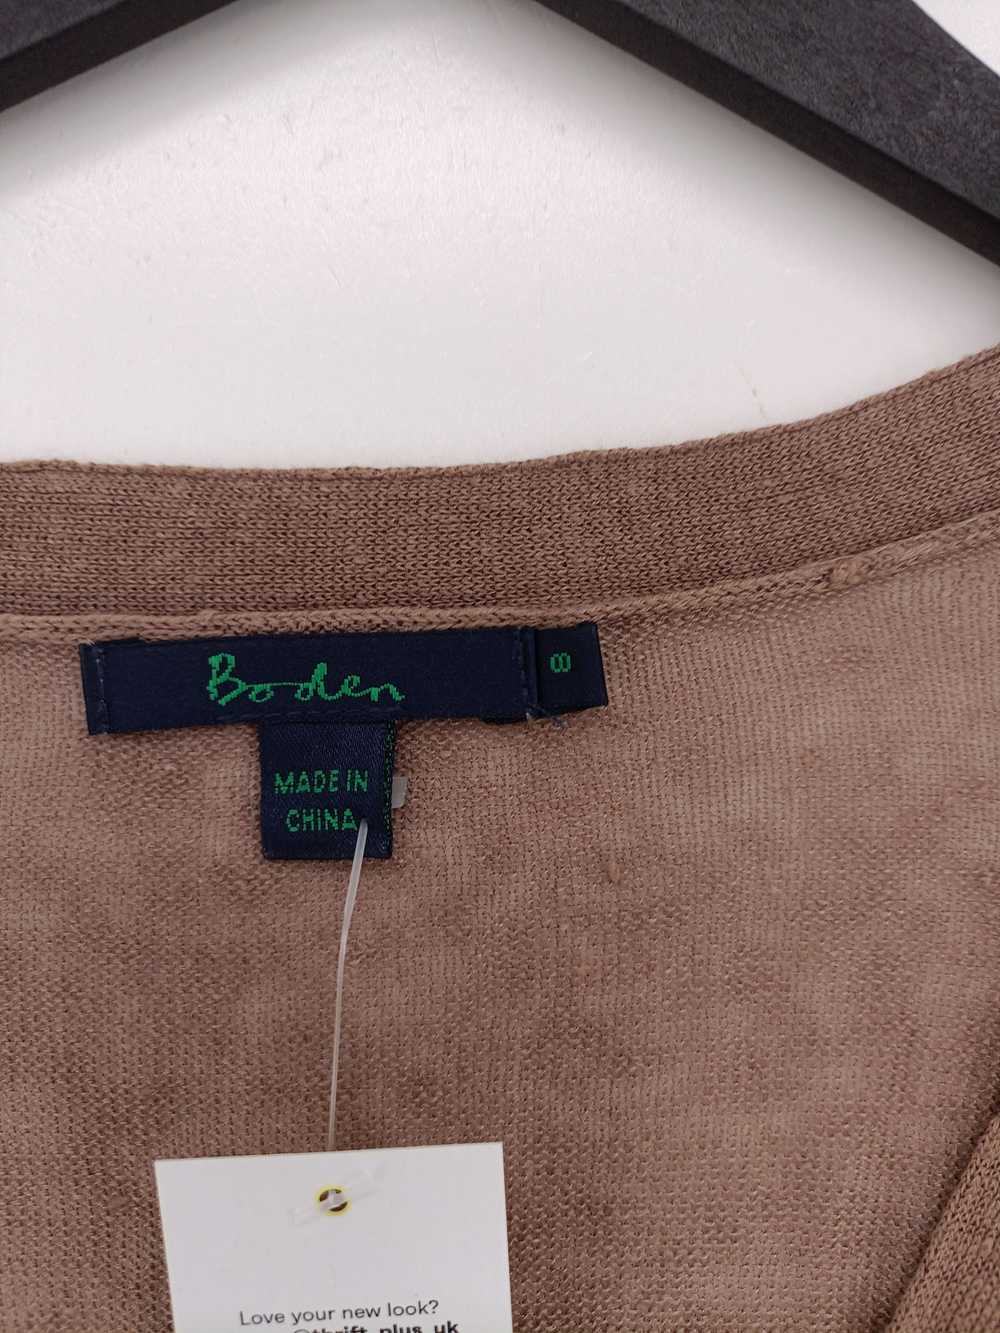 Boden Women's Cardigan UK 8 Brown 100% Linen V-Ne… - image 3